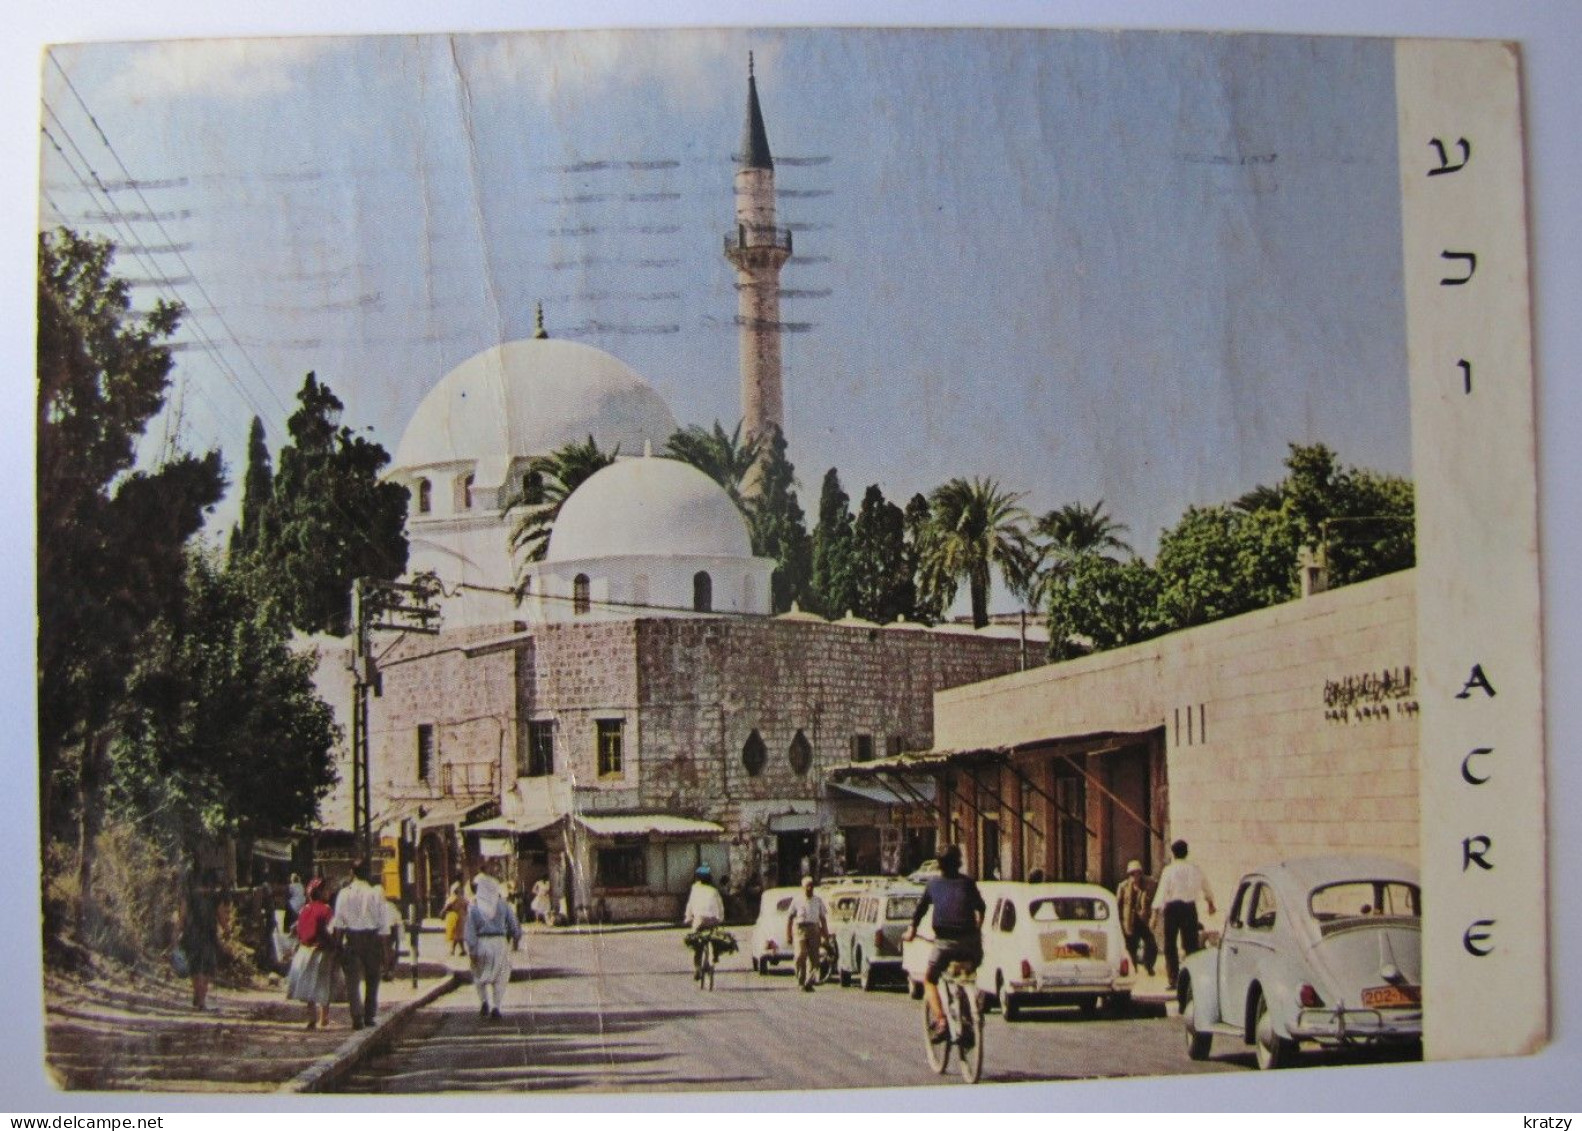 ISRAËL - ACRE - El Jazzar's Mosque - Israël